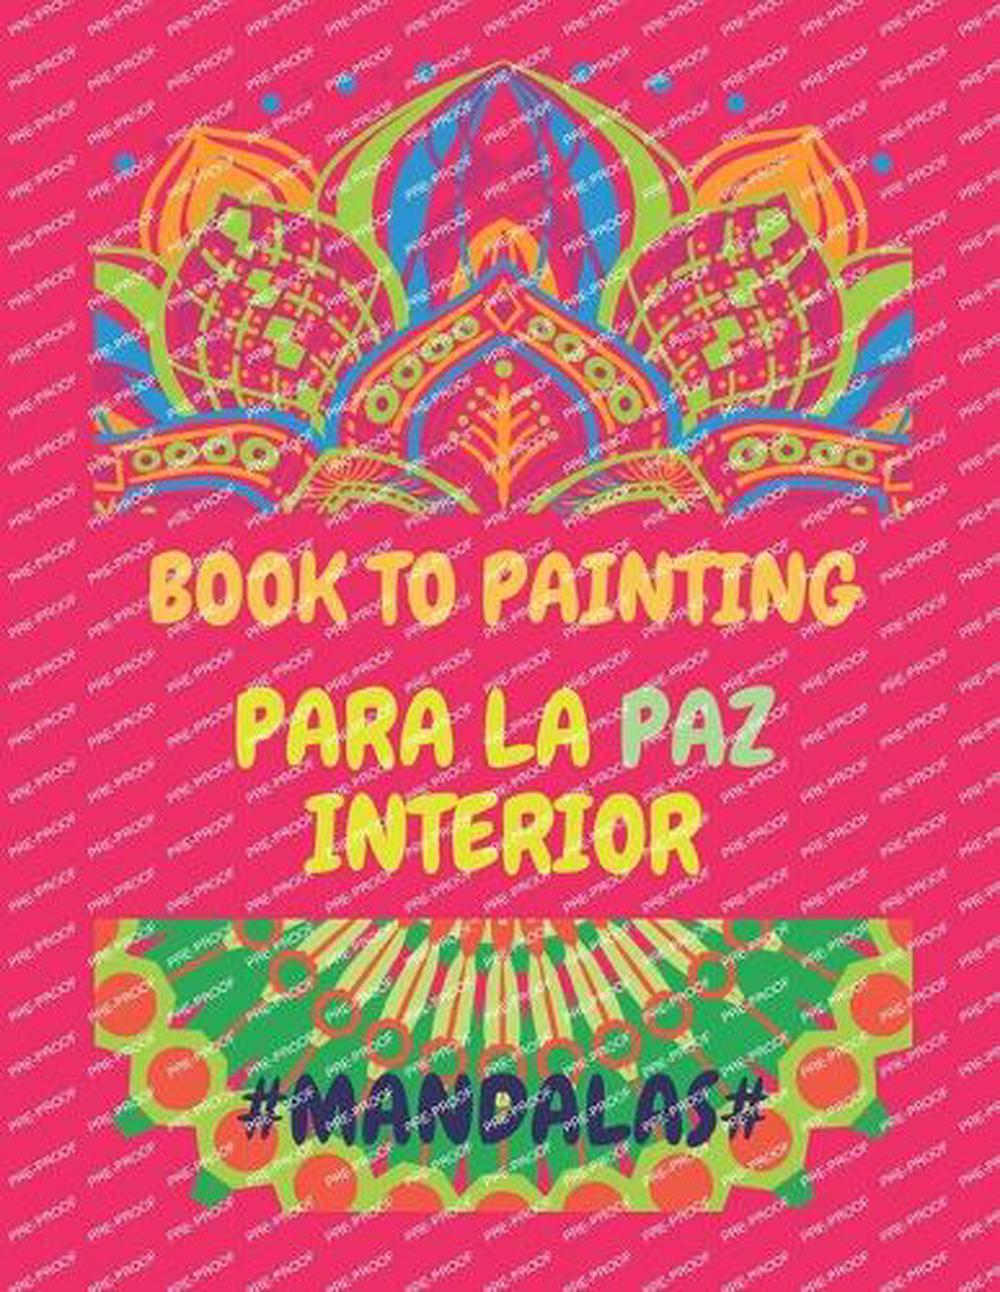 Buch zum Malen: Para La Paz Interieur von Maximiliano Serrano Taschenbuch Buch - Bild 1 von 1